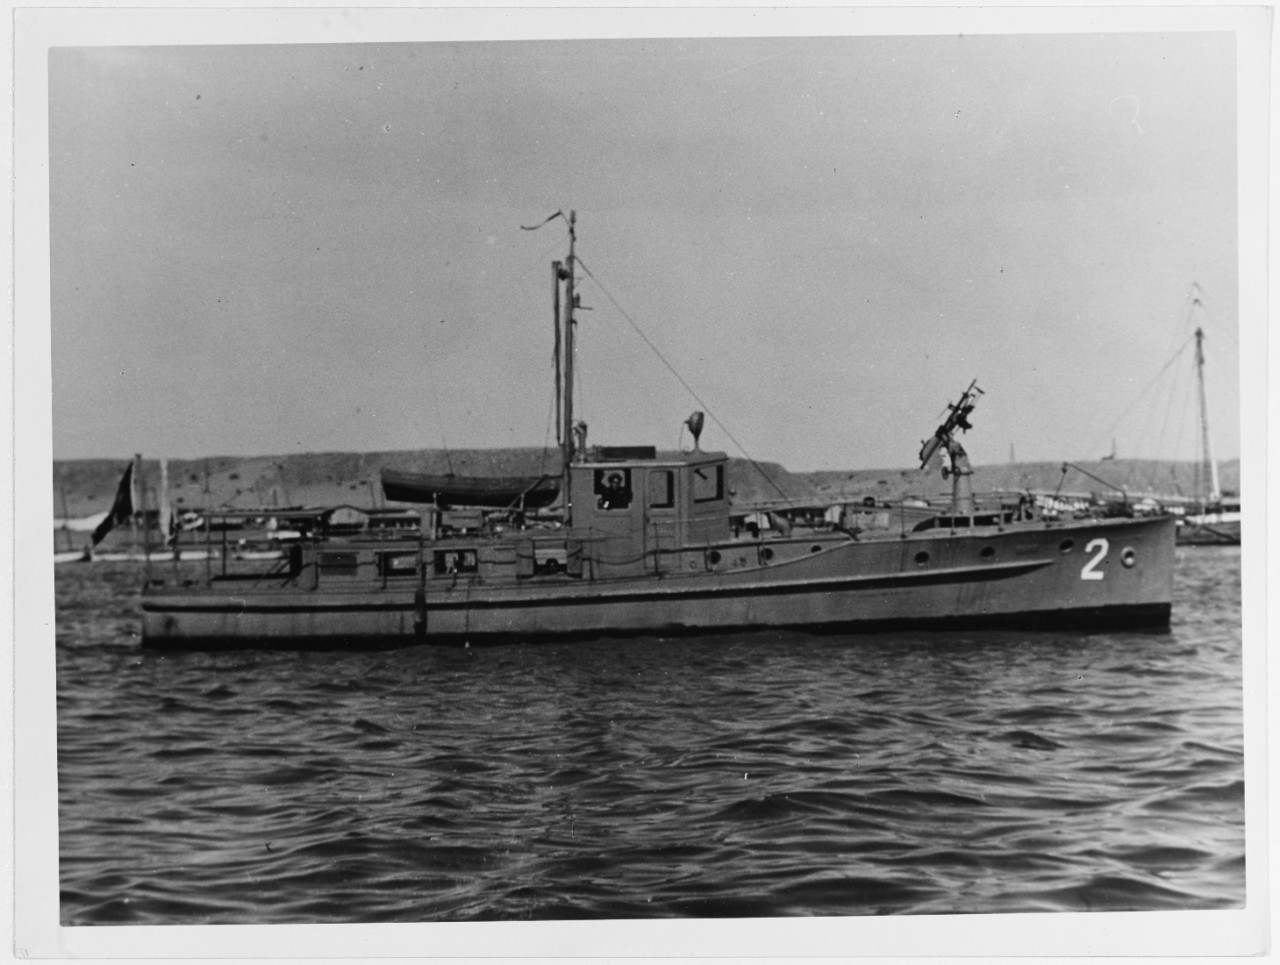 PATRULLERA No. 2 (Peruvian Naval Patrol Boat)